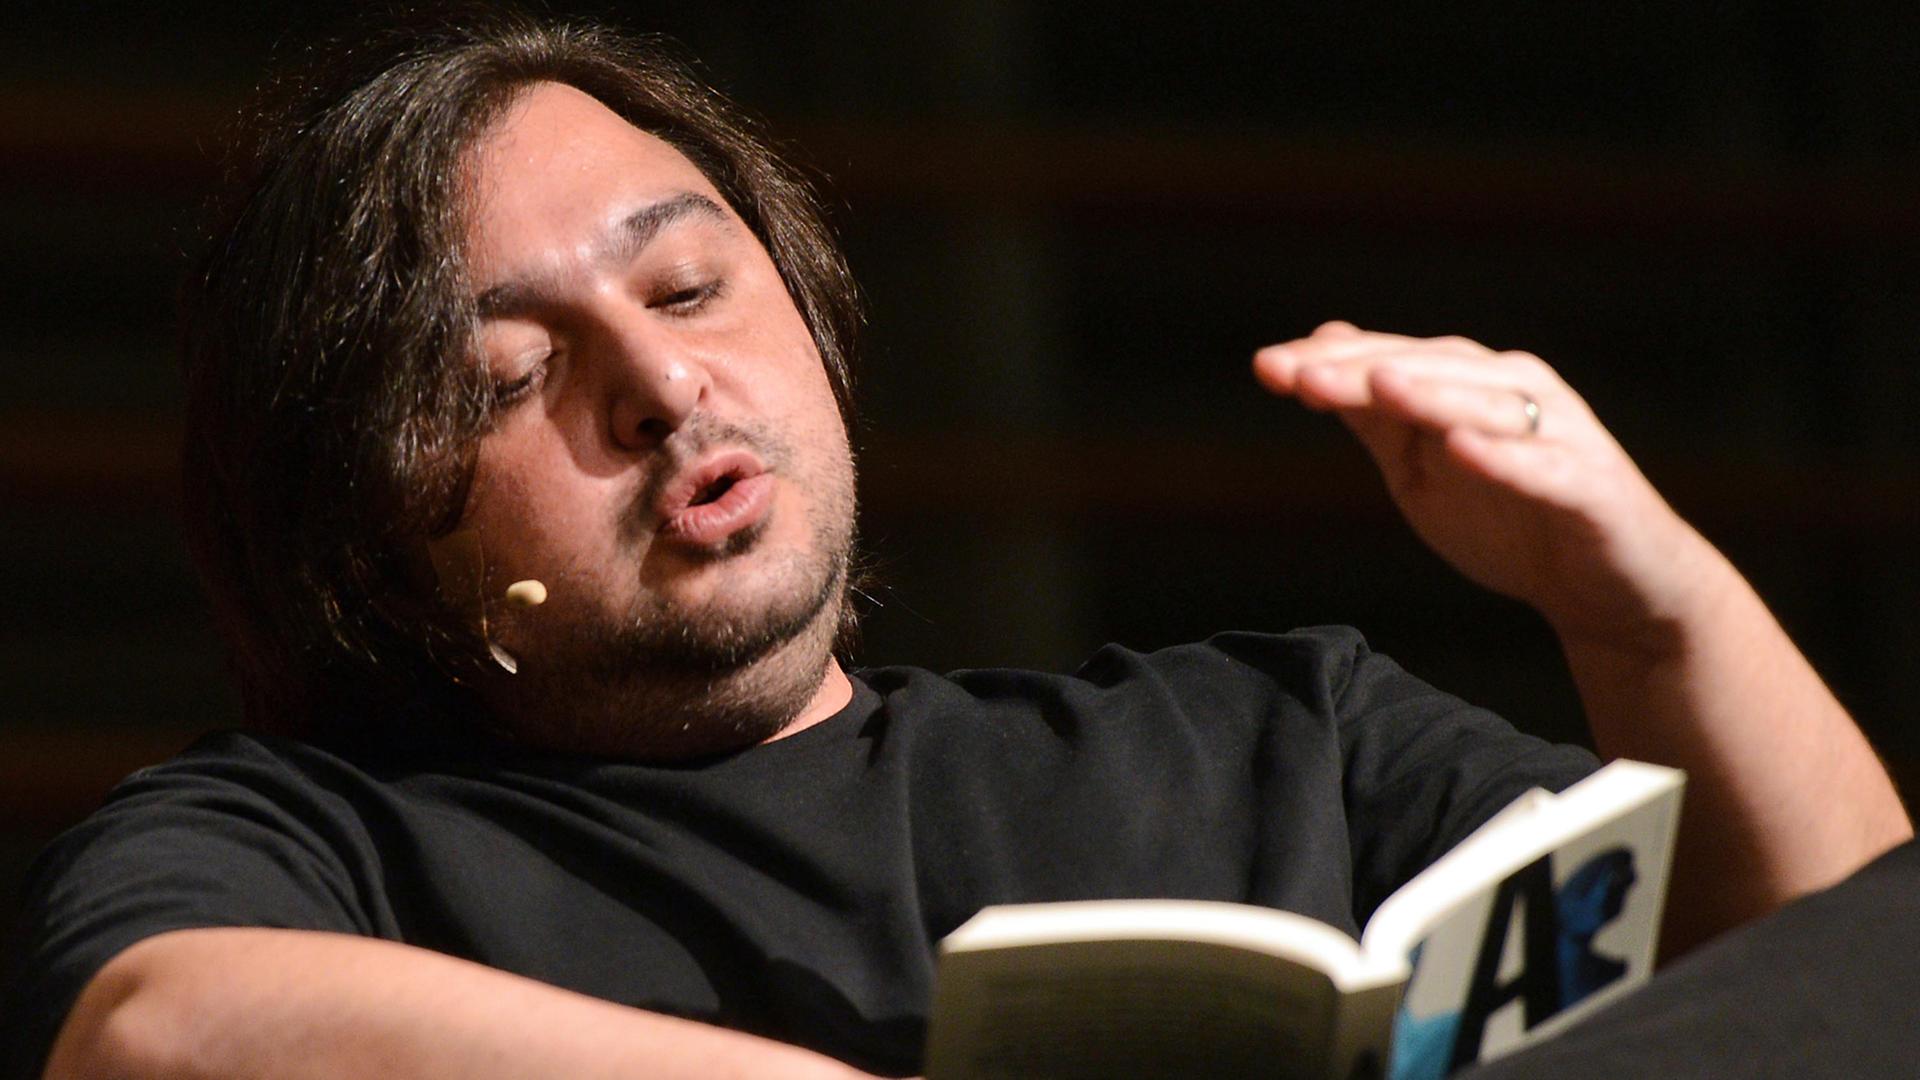 Der Autor Hakan Günday sitzt am 14.03.2014 bei einer Lesung im Rahmen des Literaturfestivals lit.Cologne in Köln (Nordrhein-Westfalen) auf der Bühne, wo er sein Buch "Extrem" vorstellt.